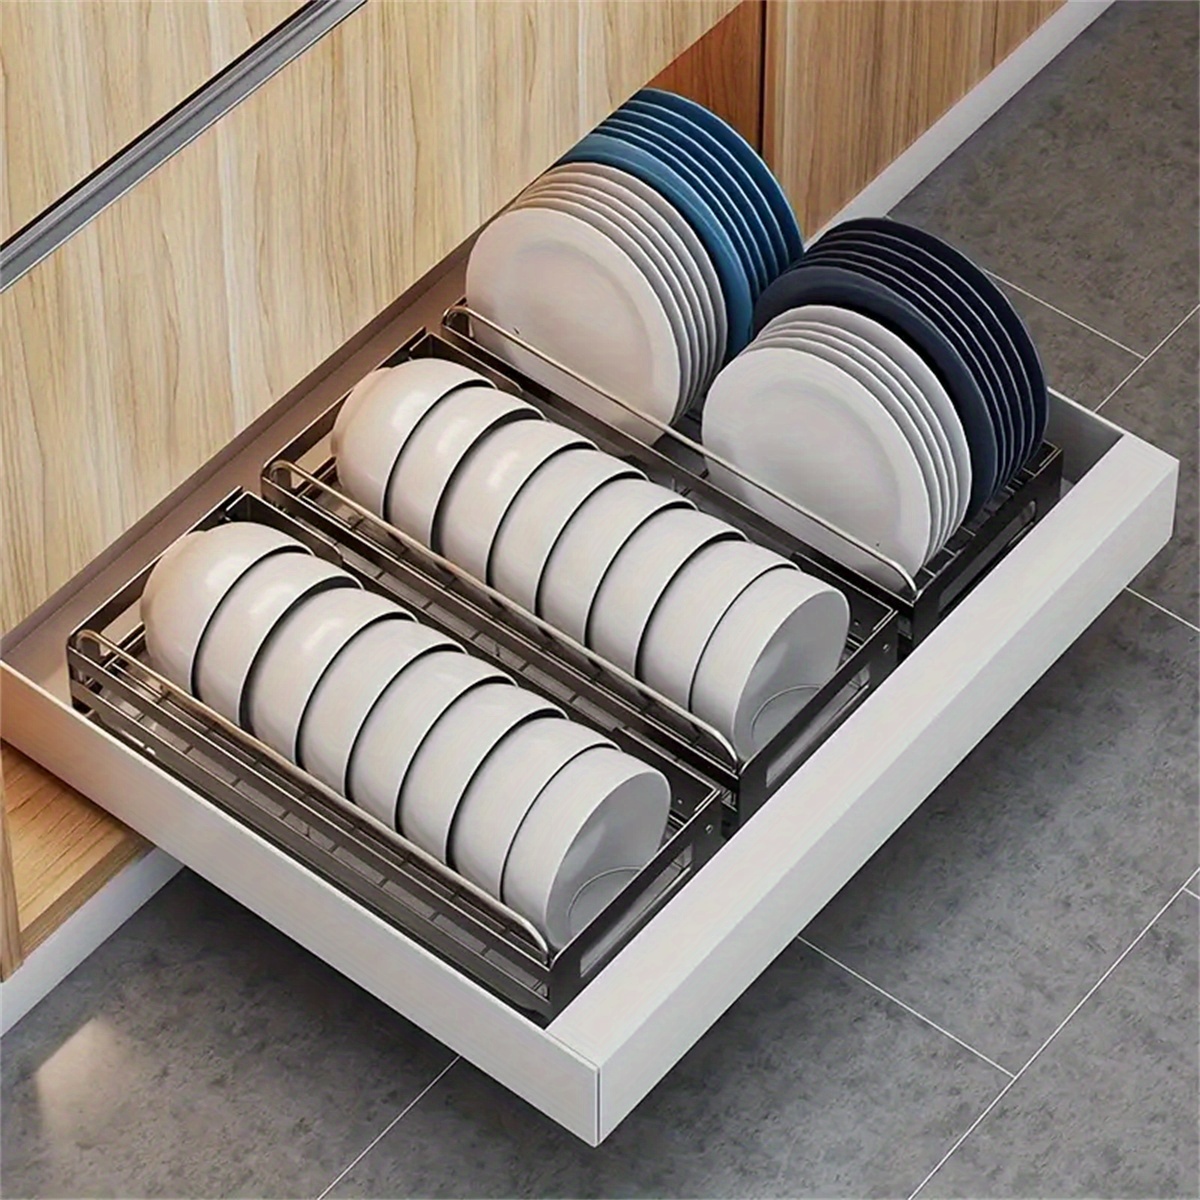 Kitchen Dish Organizing Rack, Drawer-type Pull Basket, Plate Rack